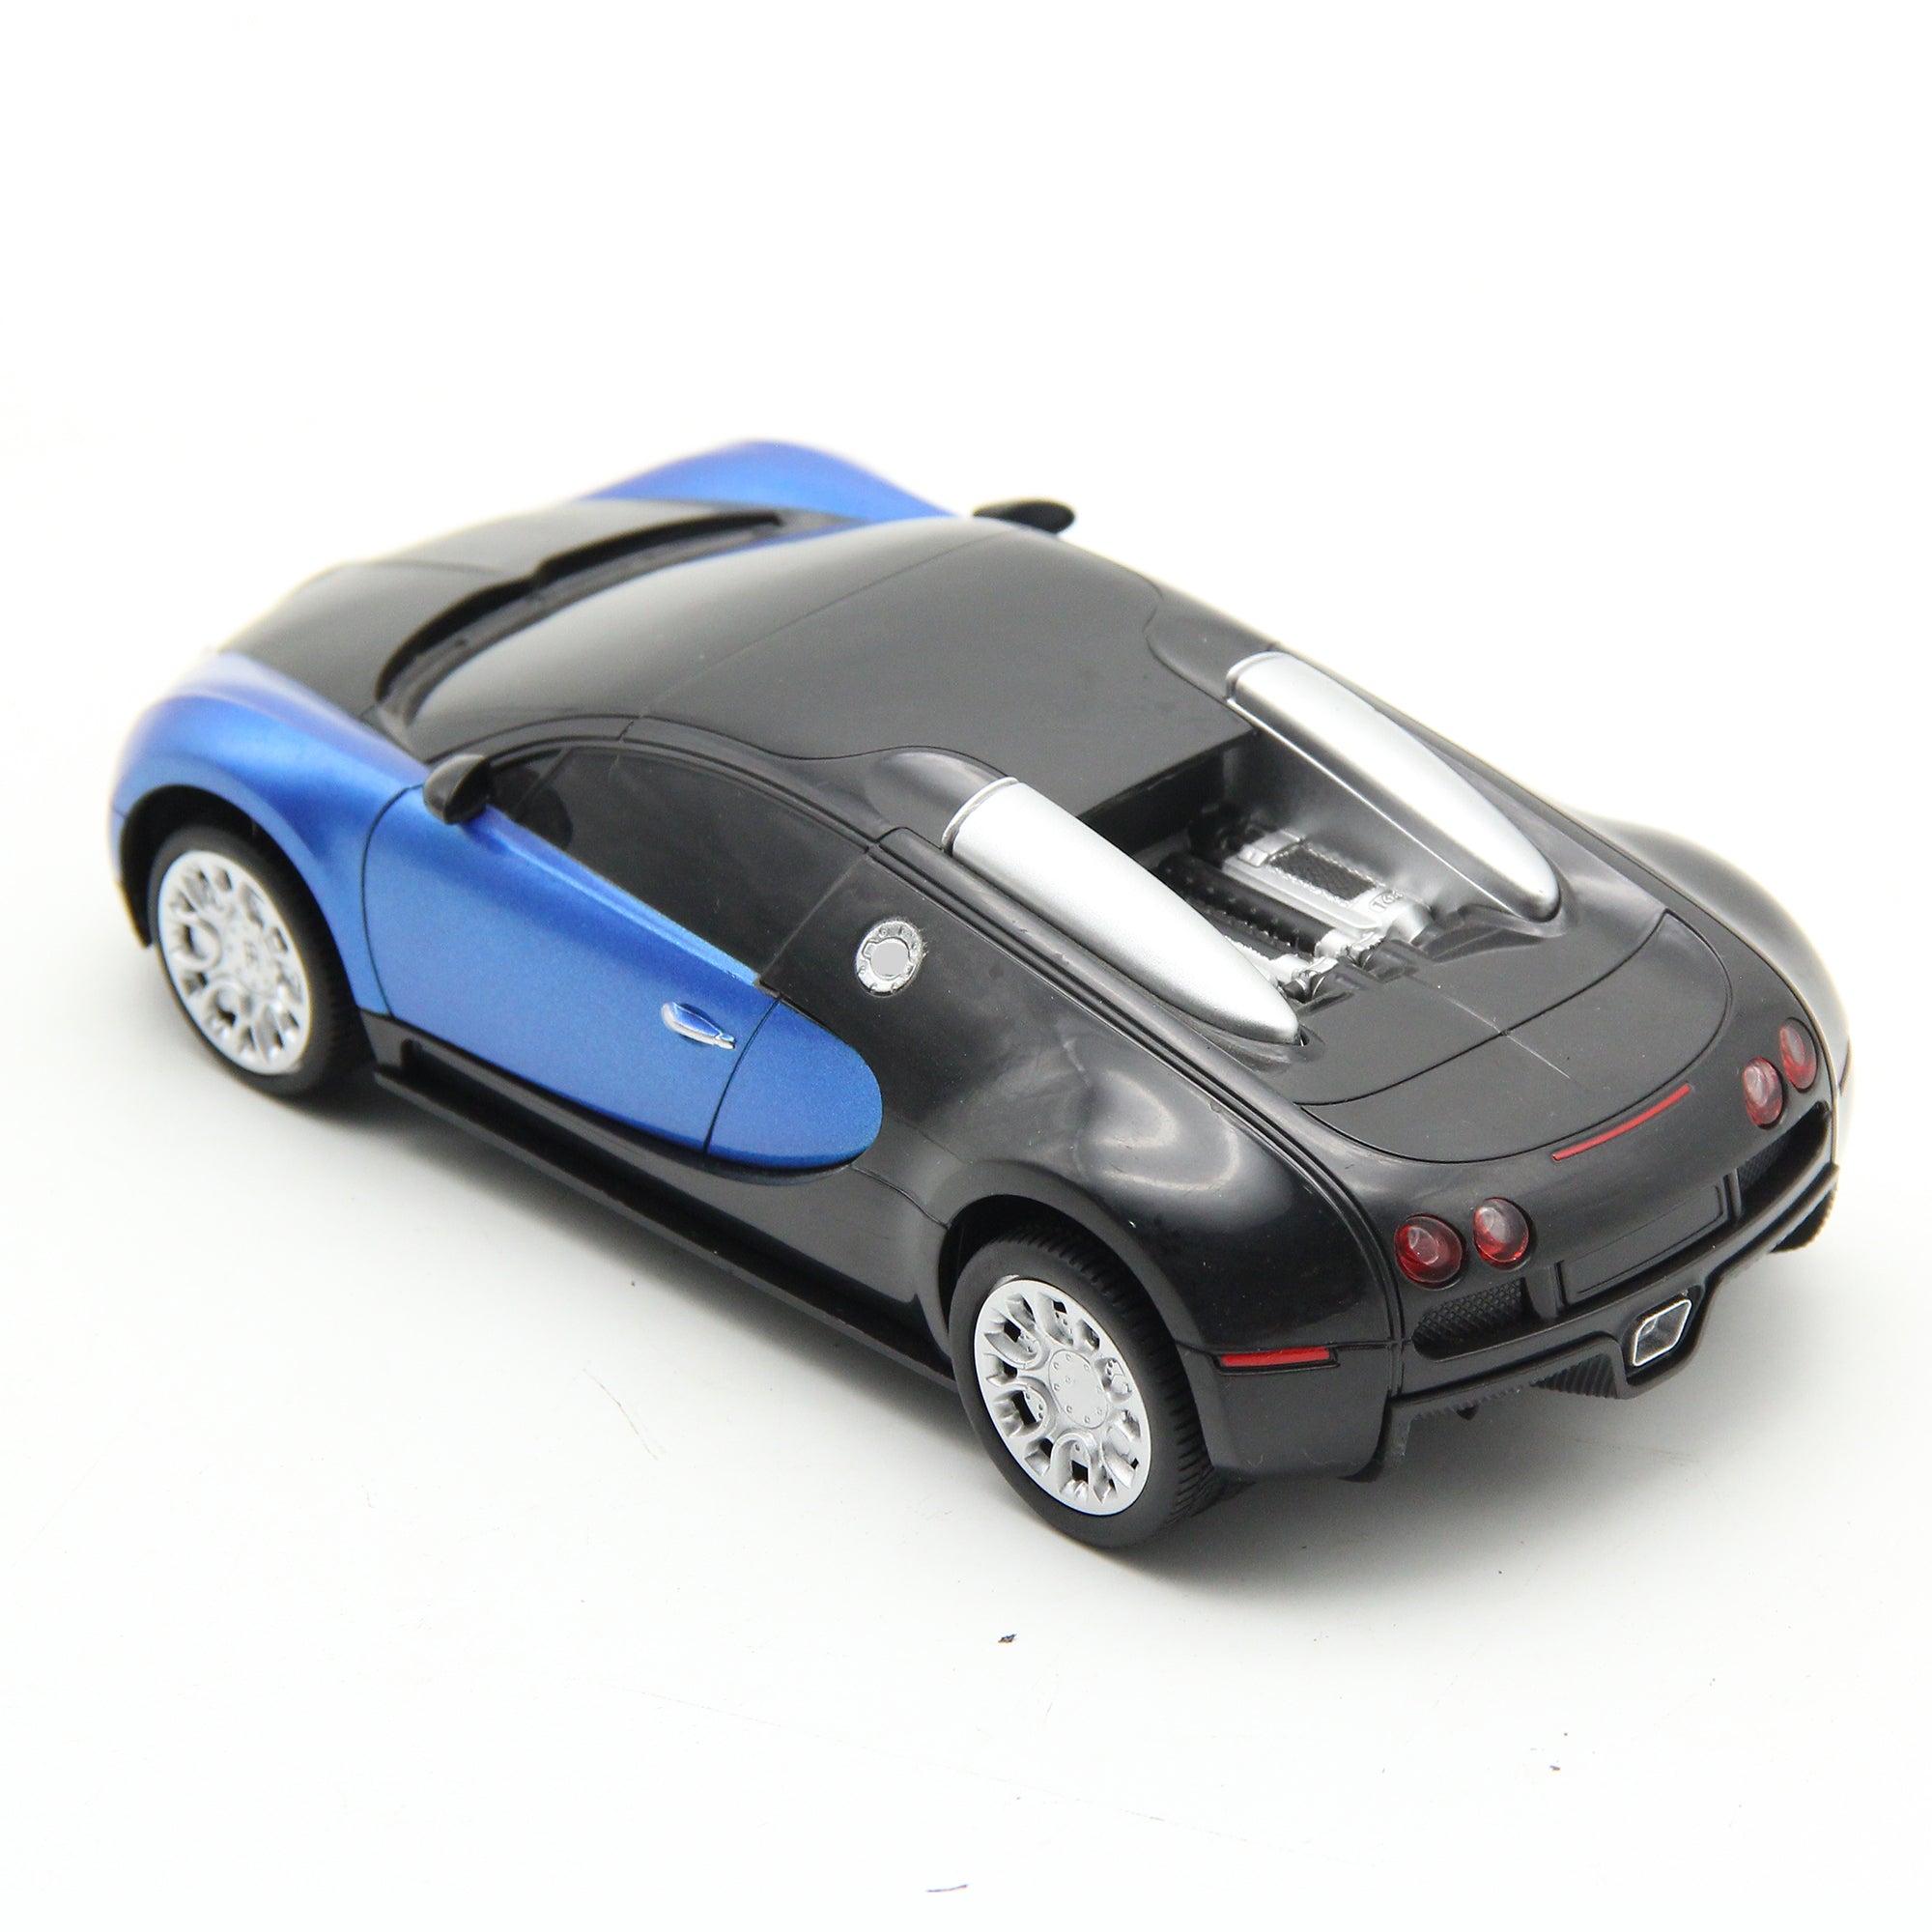 Playzu Remote Control Car Series, Sports Car R/C 1:24 - Blue